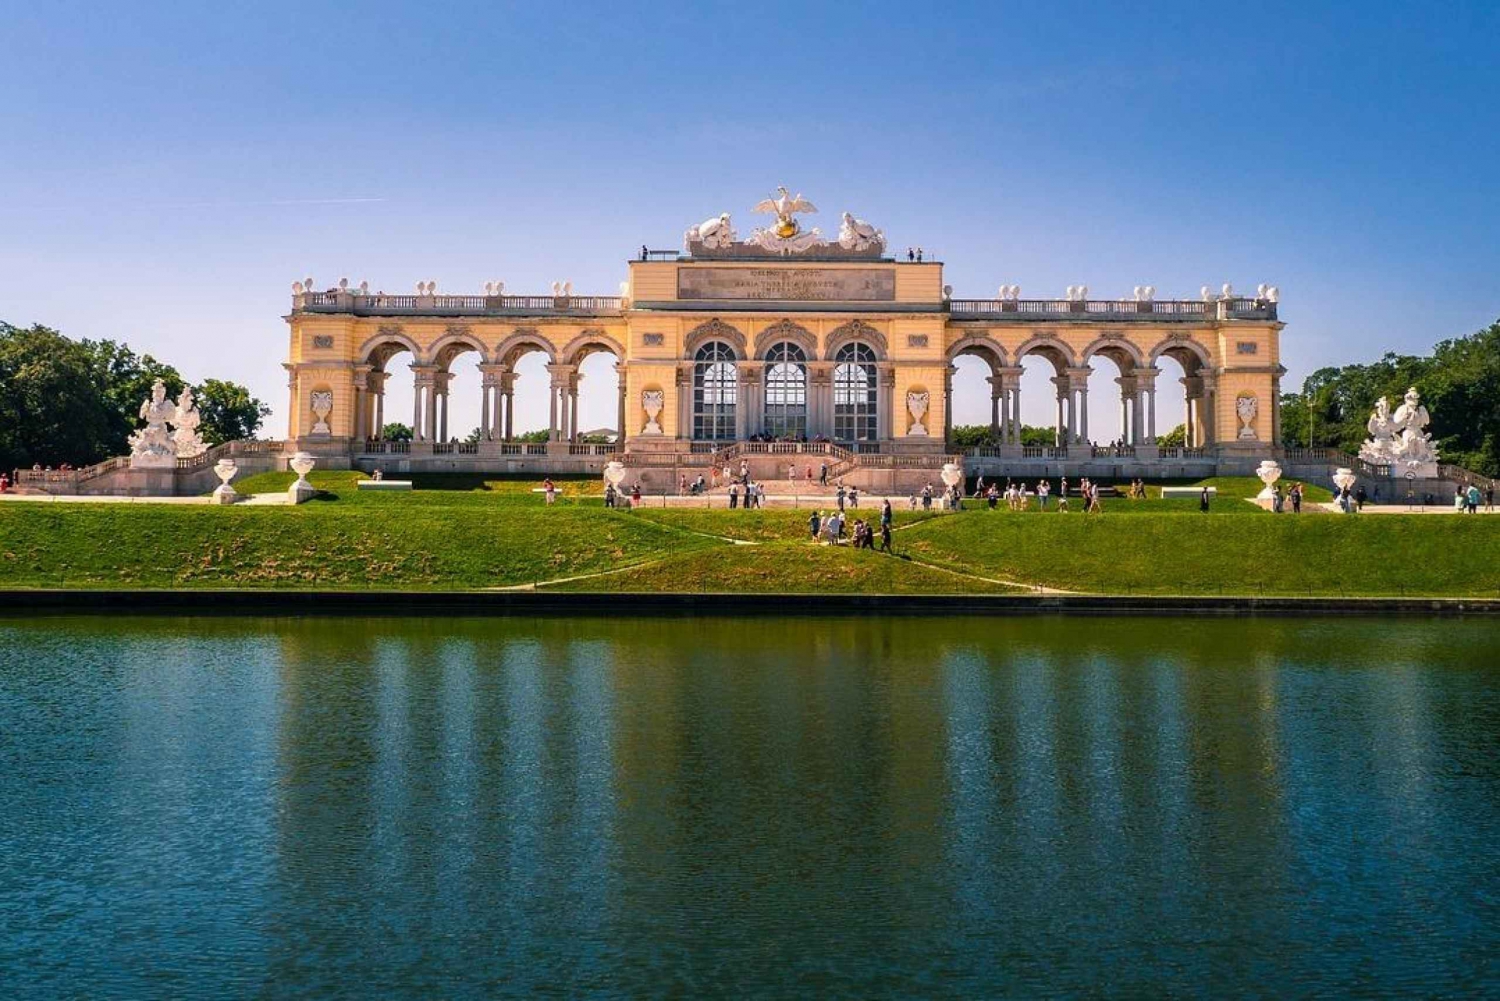 Vienne : visite des jardins de Schönbrunn avec visite facultative du palais